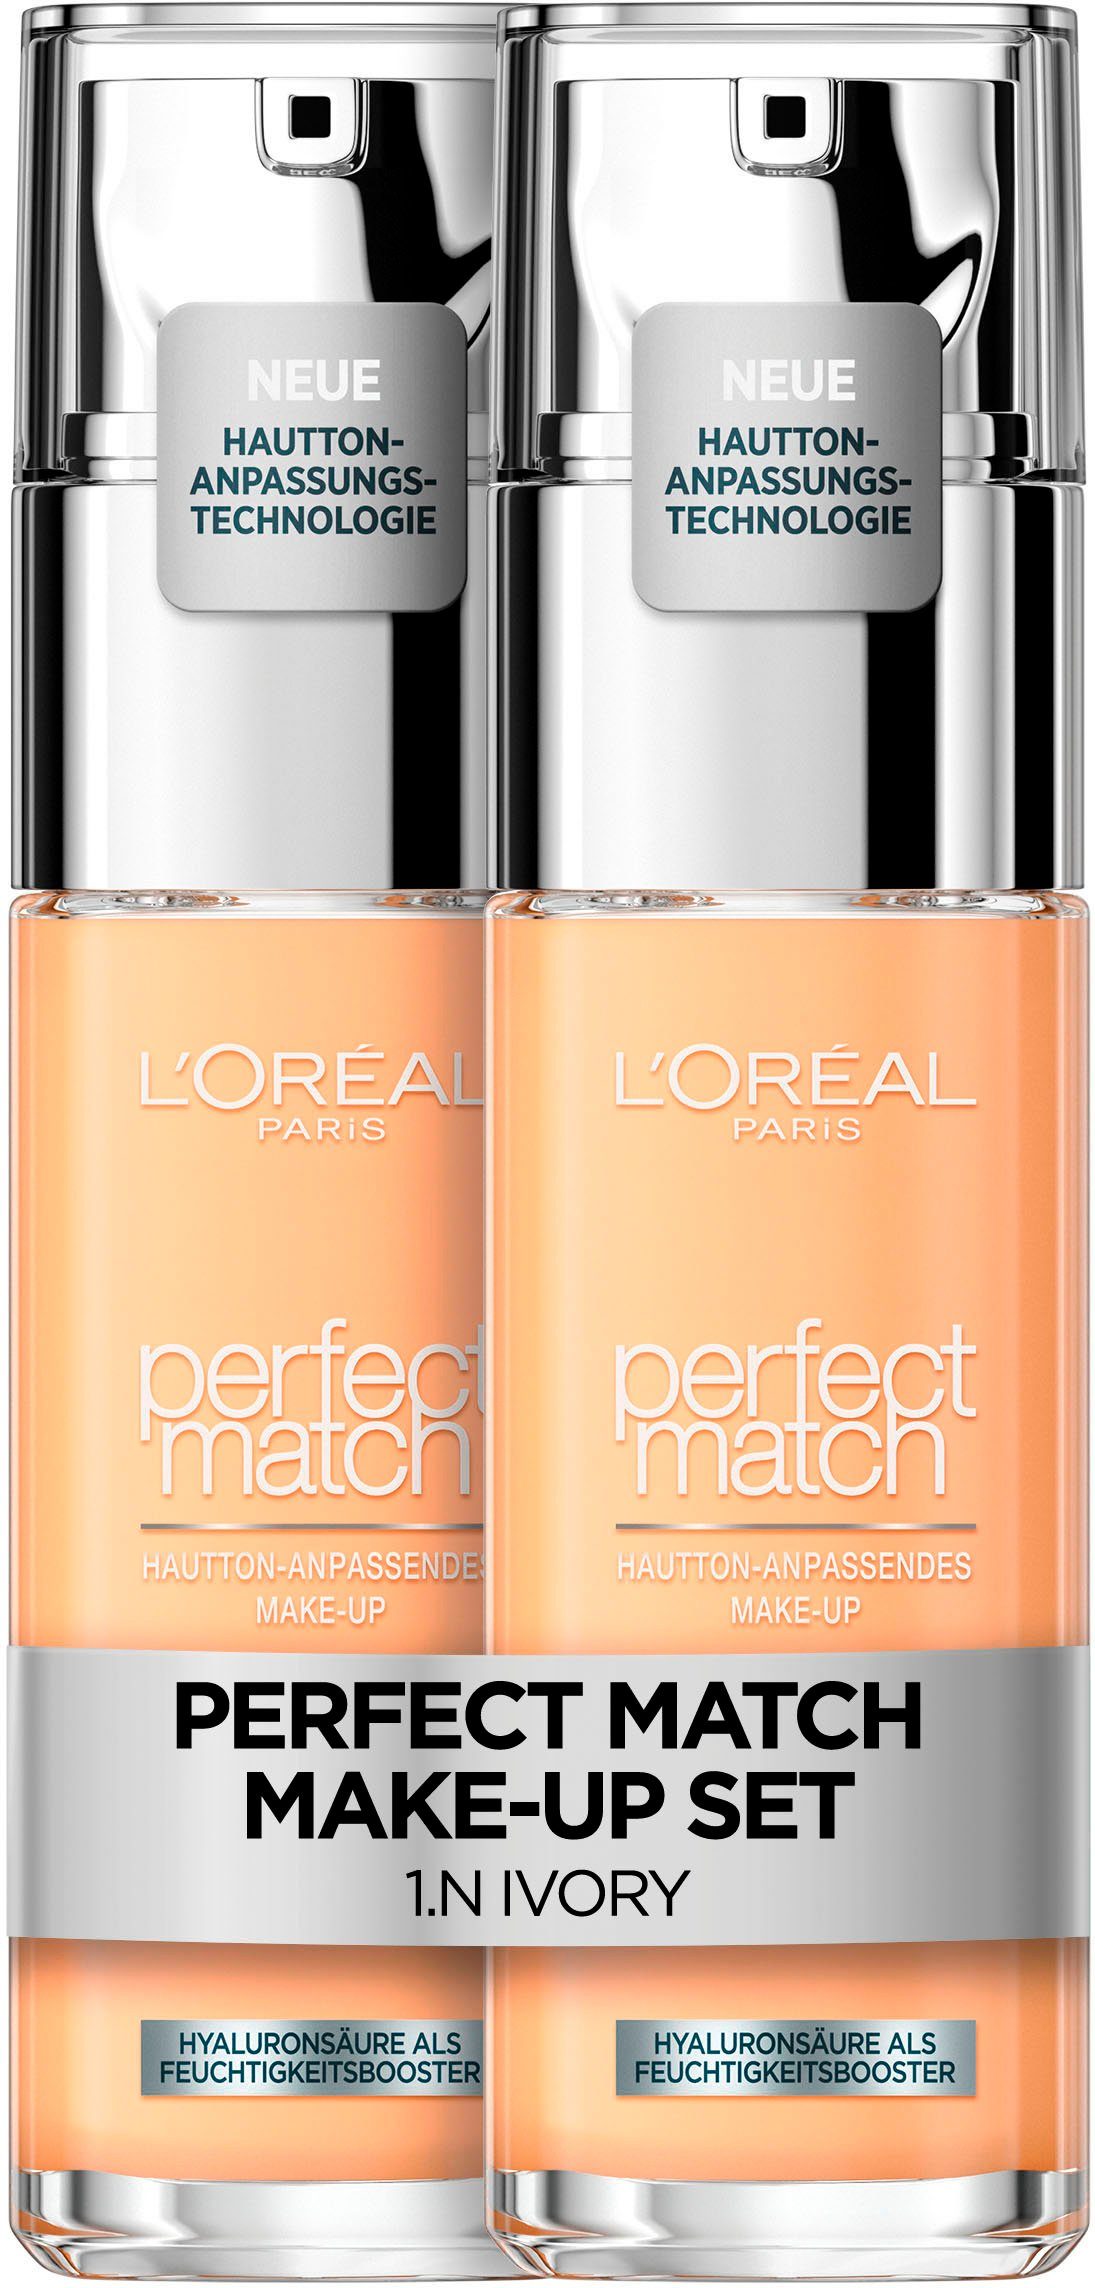 L'ORÉAL PARIS Foundation Perfect Match 1.N natur Doppelpack Make-Up